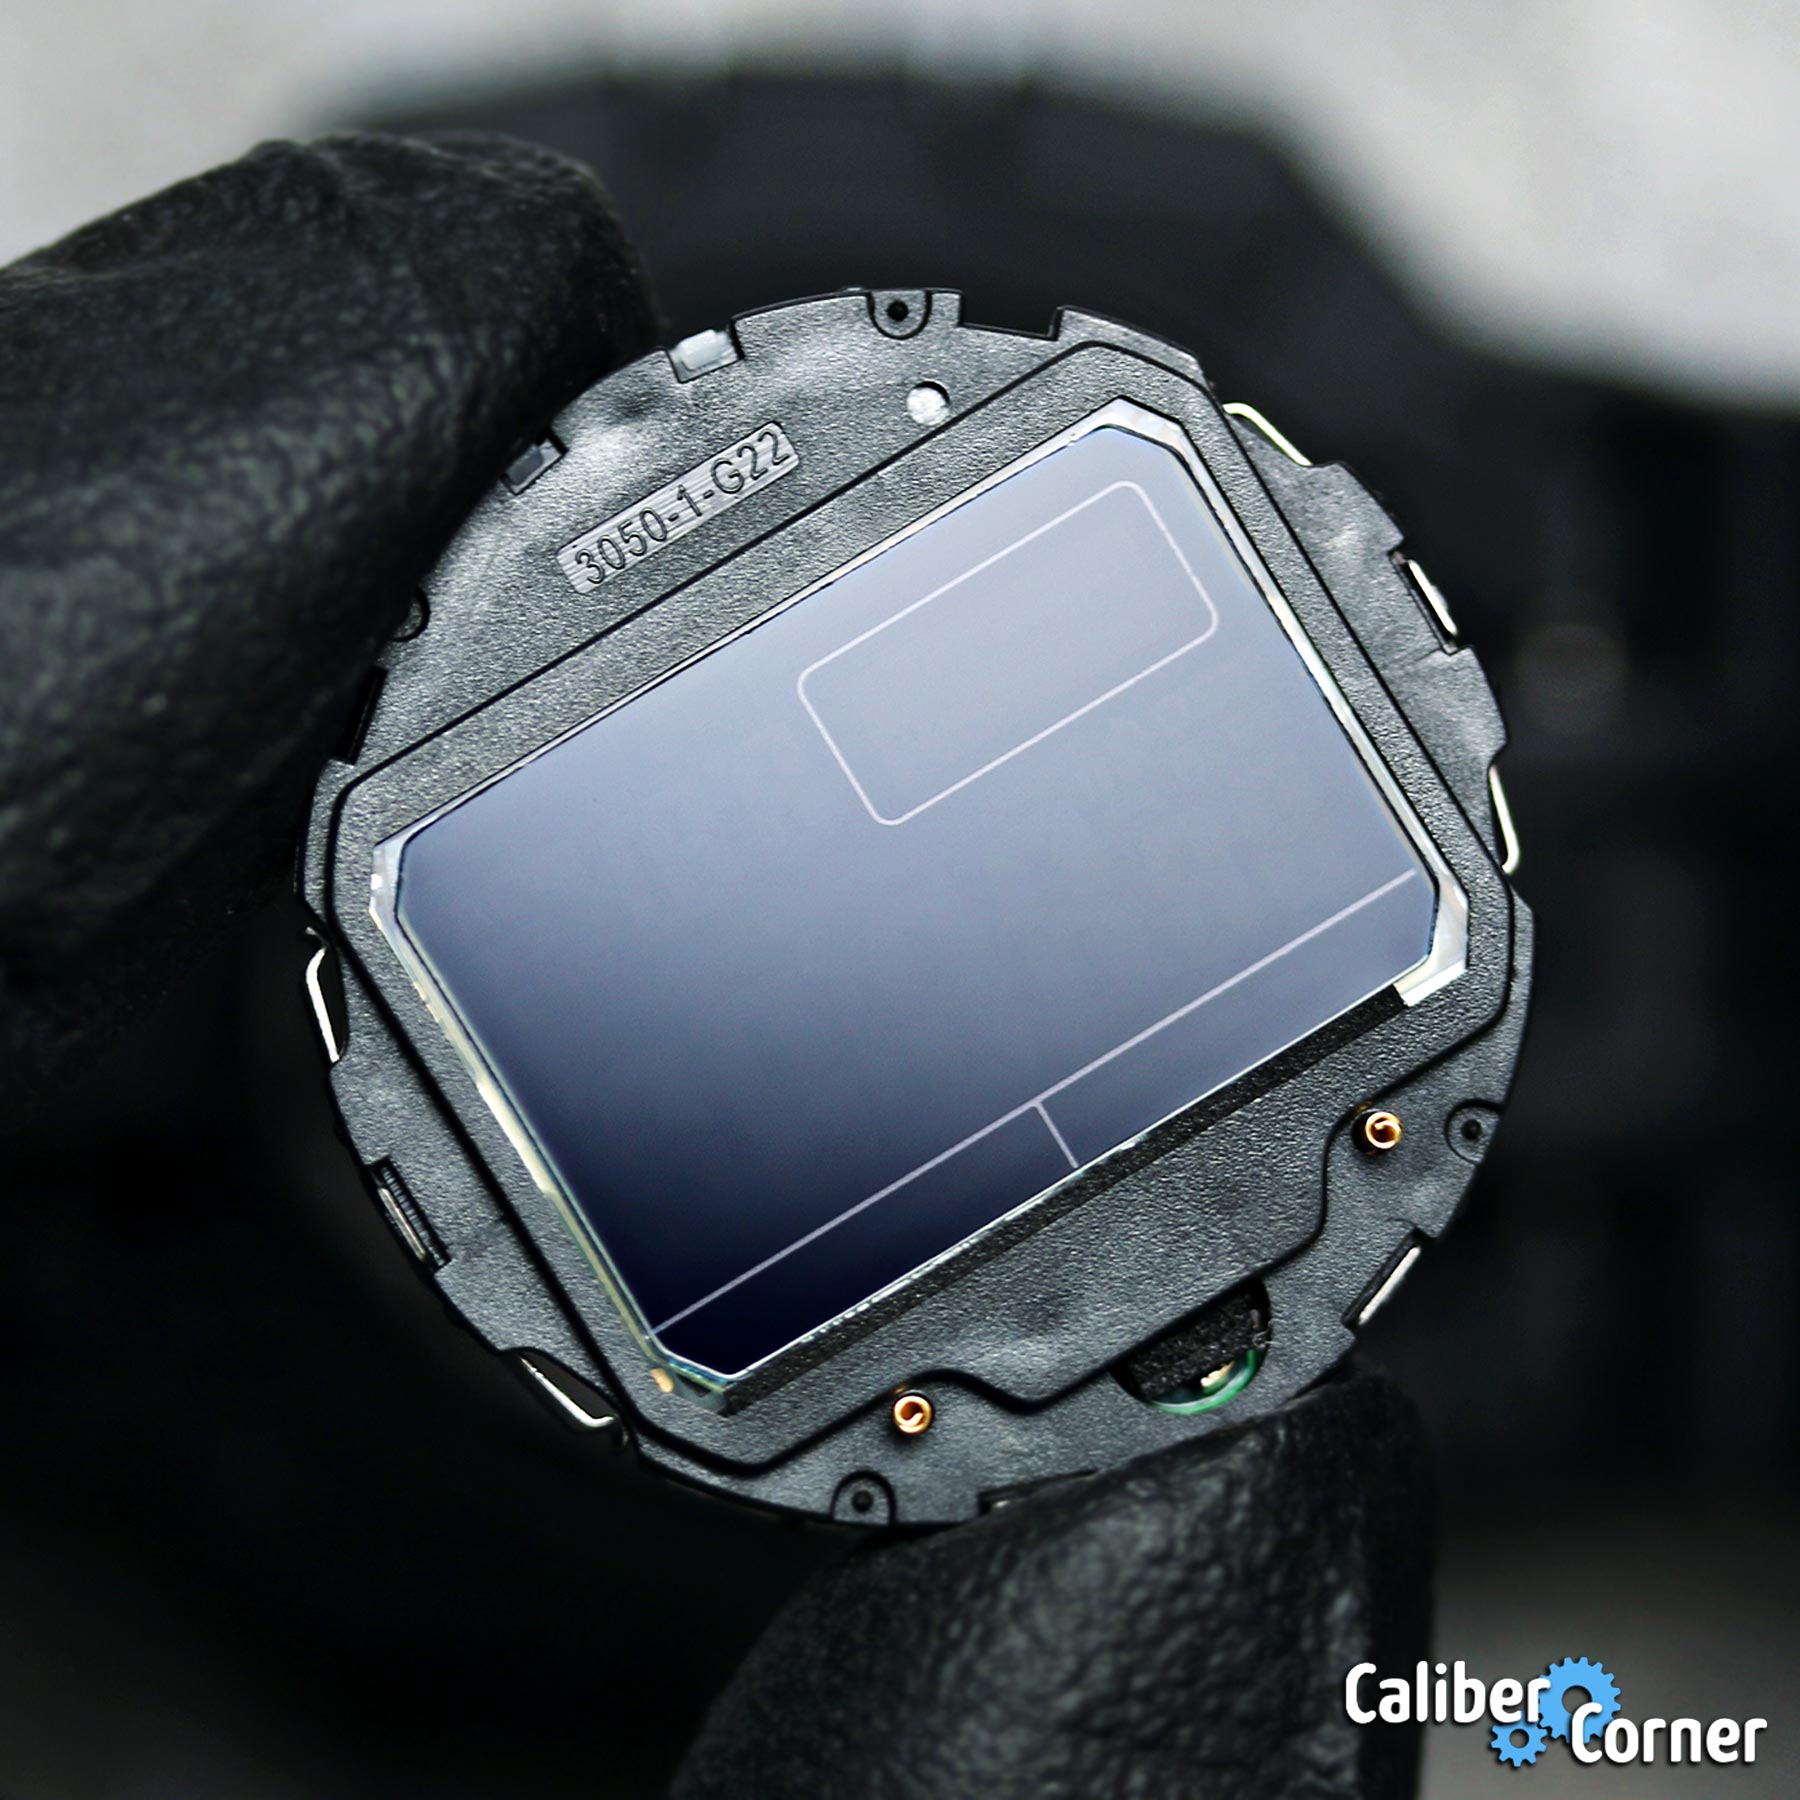 Casio G Shock Caliber 3159 Module Inverted Screen